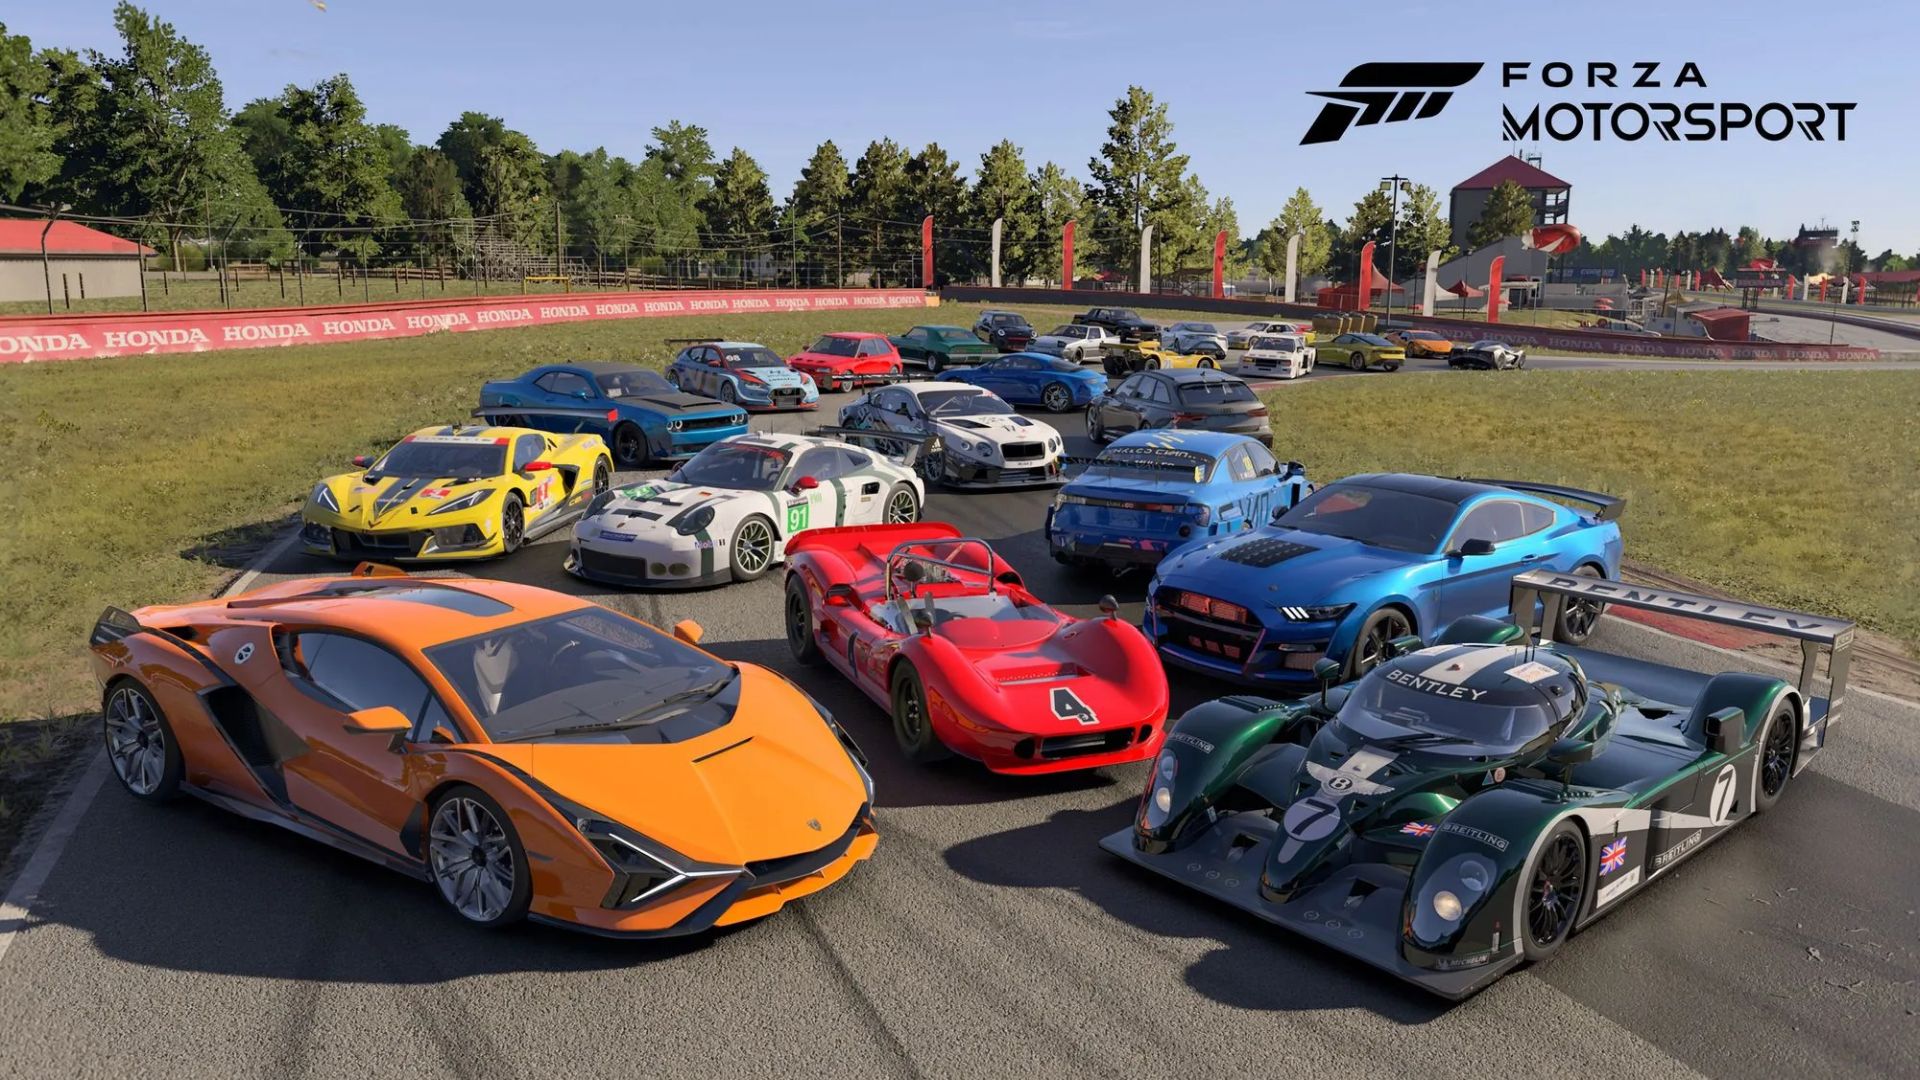 Forza Motorsport Livestream Announced for September 11th